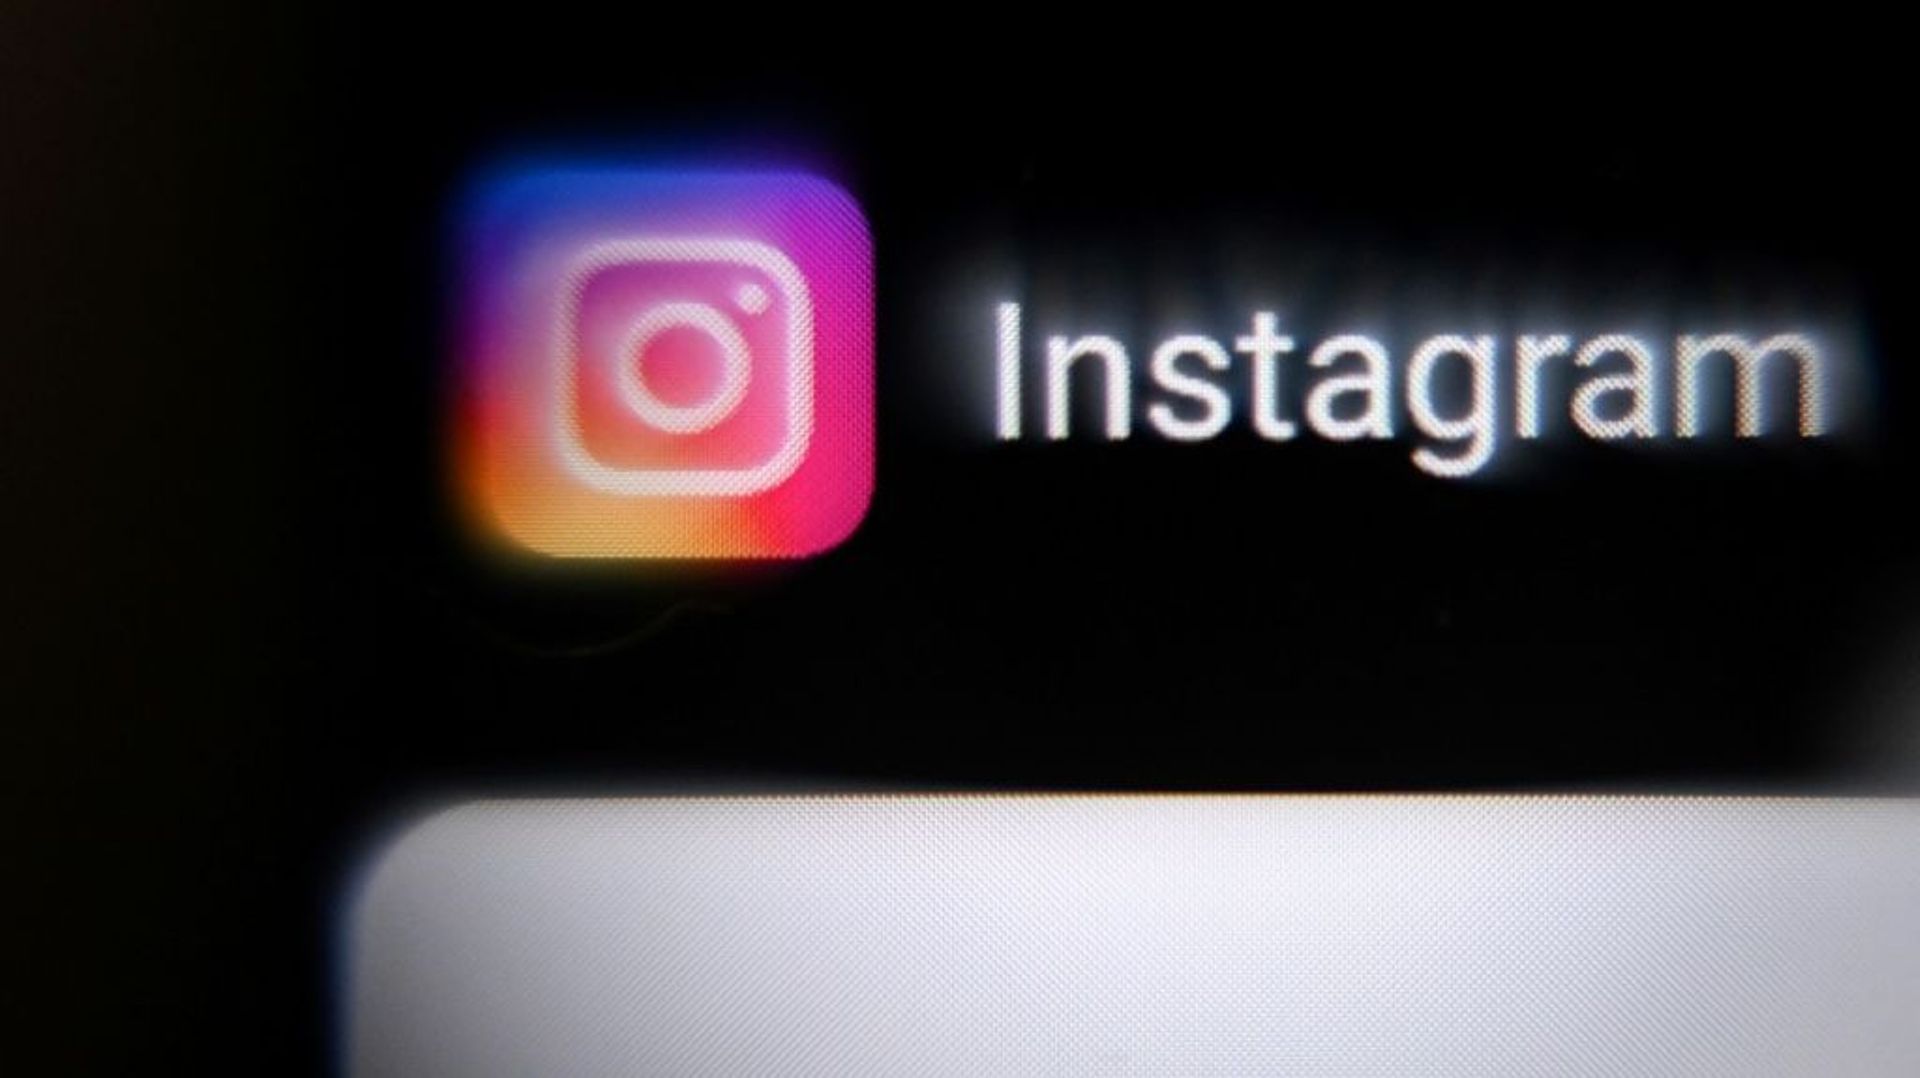 Le réseau social Instagram, filial du groupe Meta, la maison-mère de Facebook, a écopé d’une amende record de 405 millions d’euros pour des manquements au traitement des données des mineurs